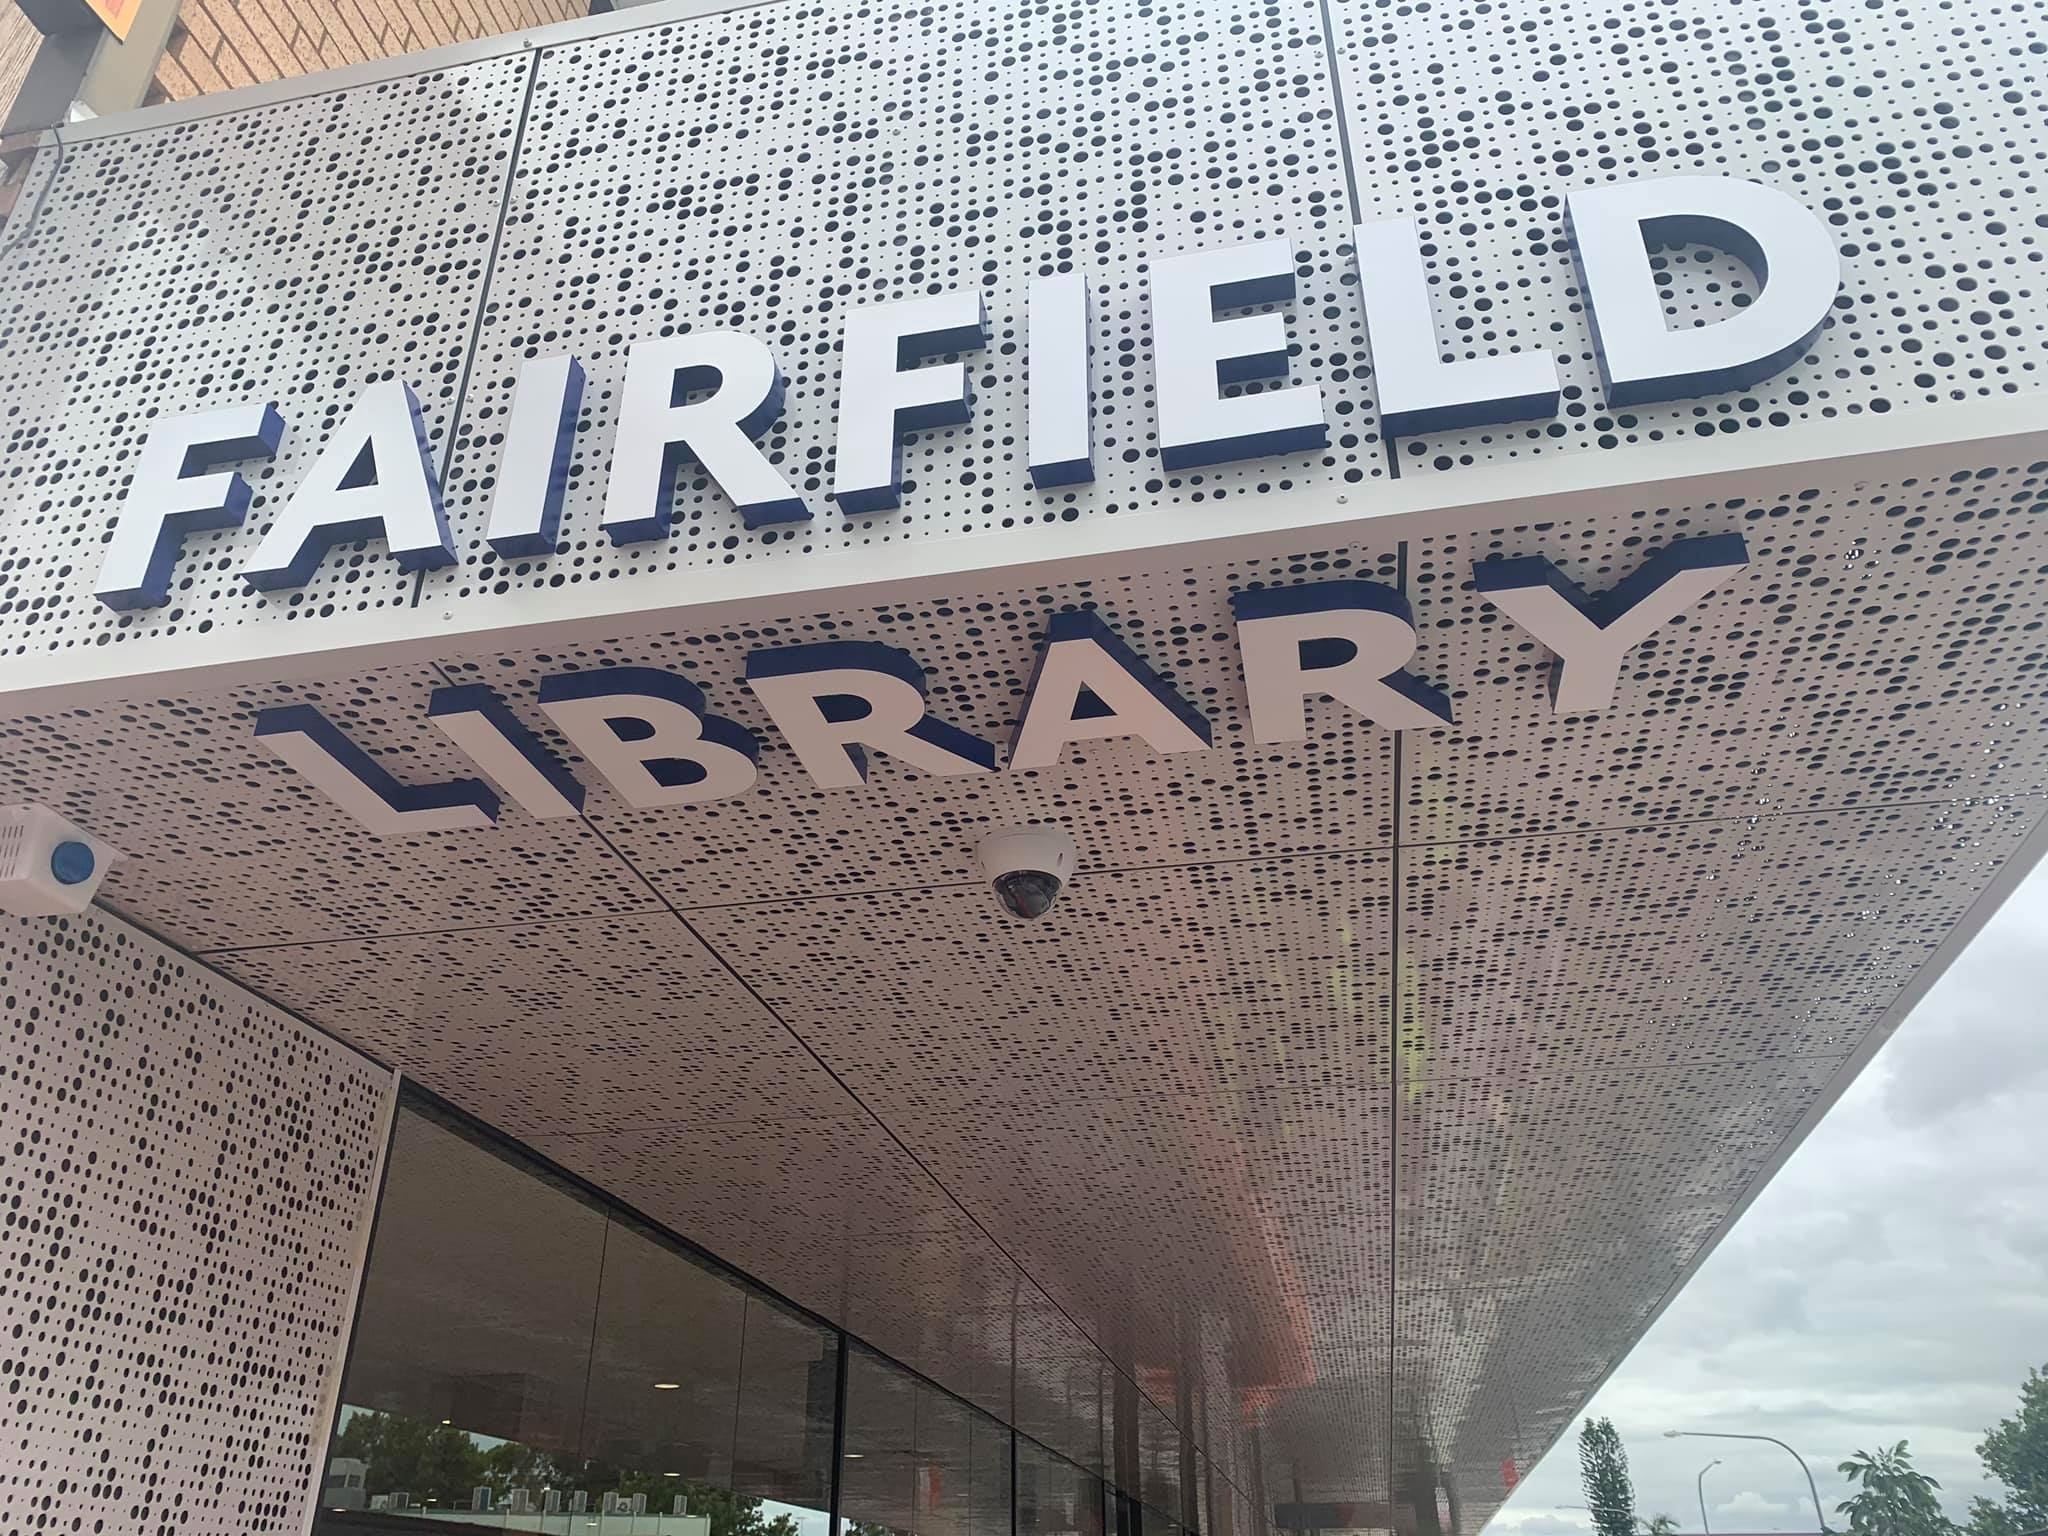 Fairfield Library 